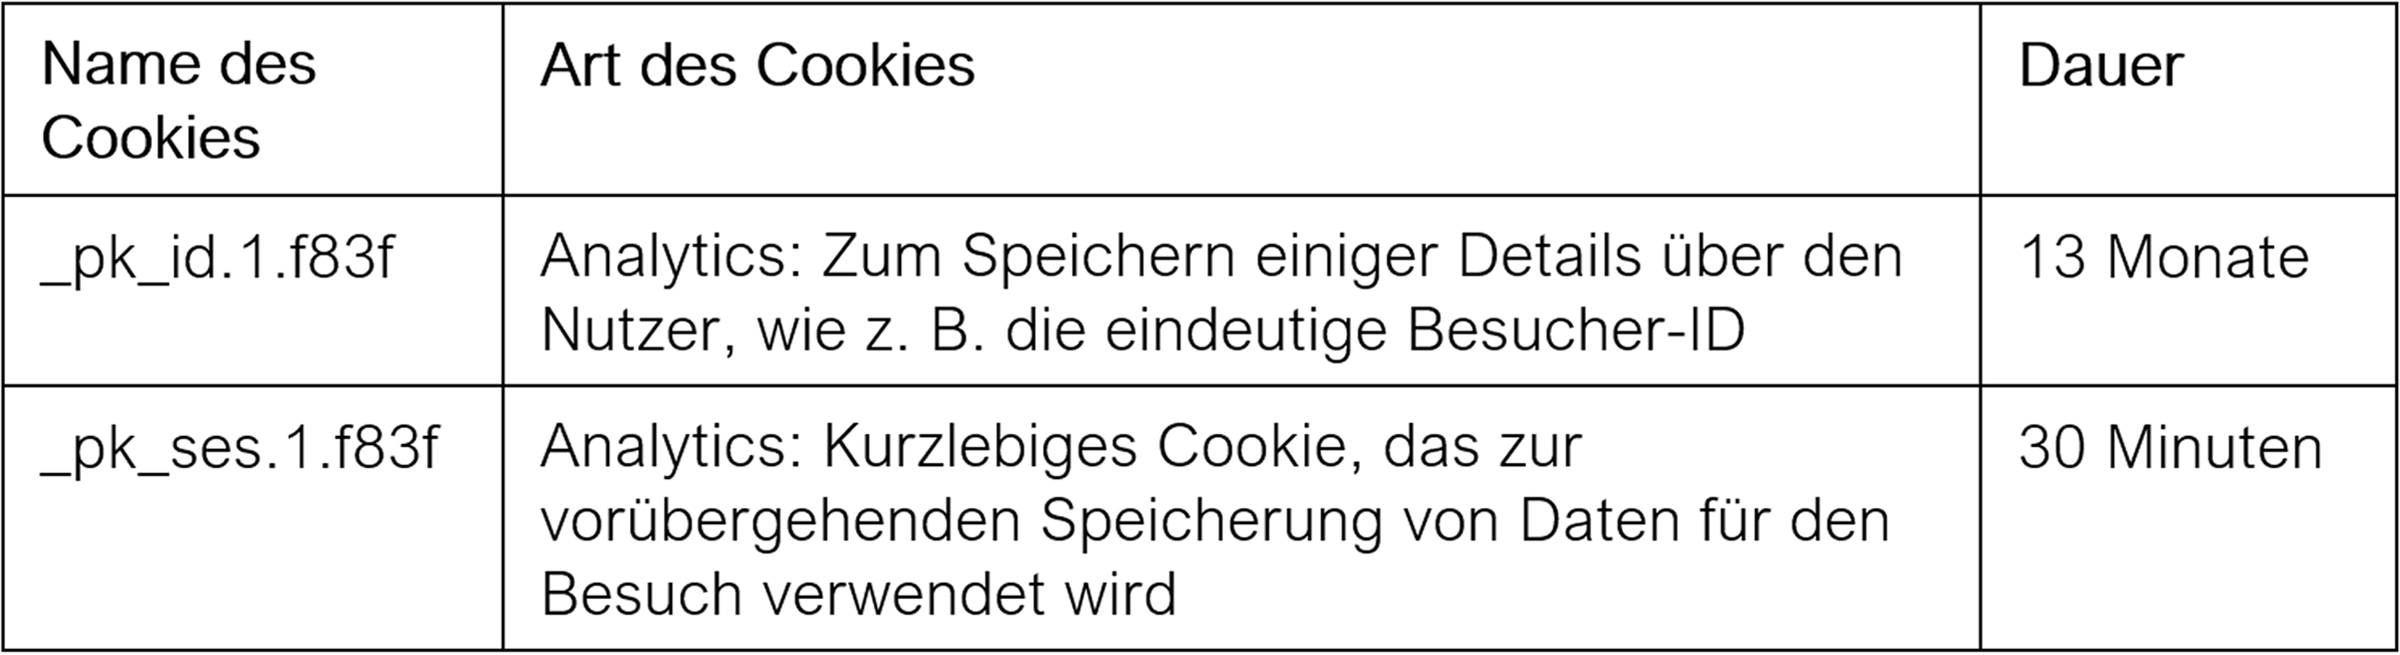 3_Text Cookies_de